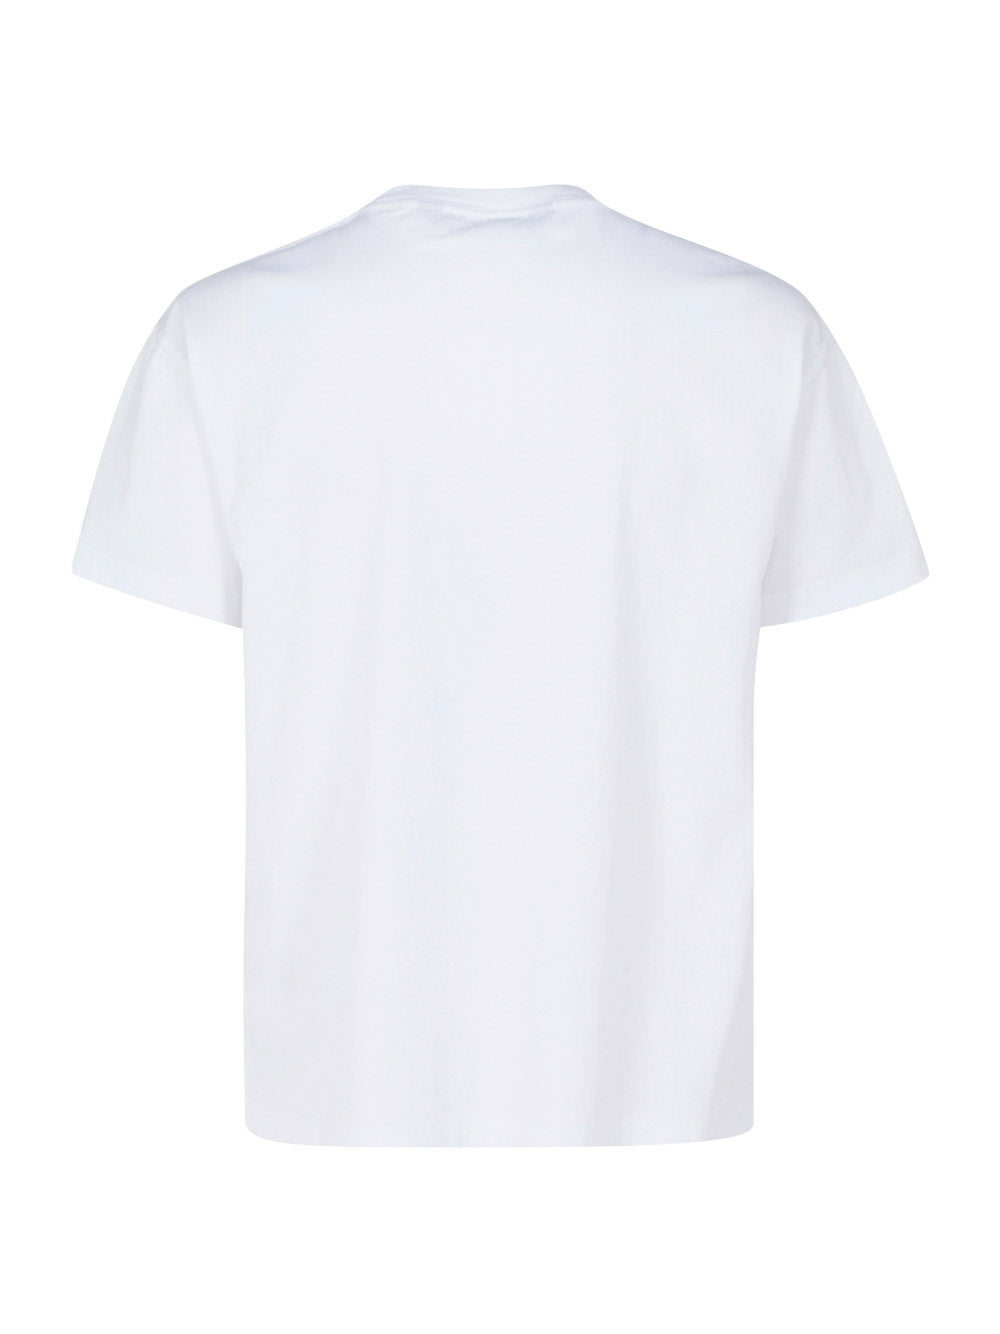 Sunset T-Shirt - White